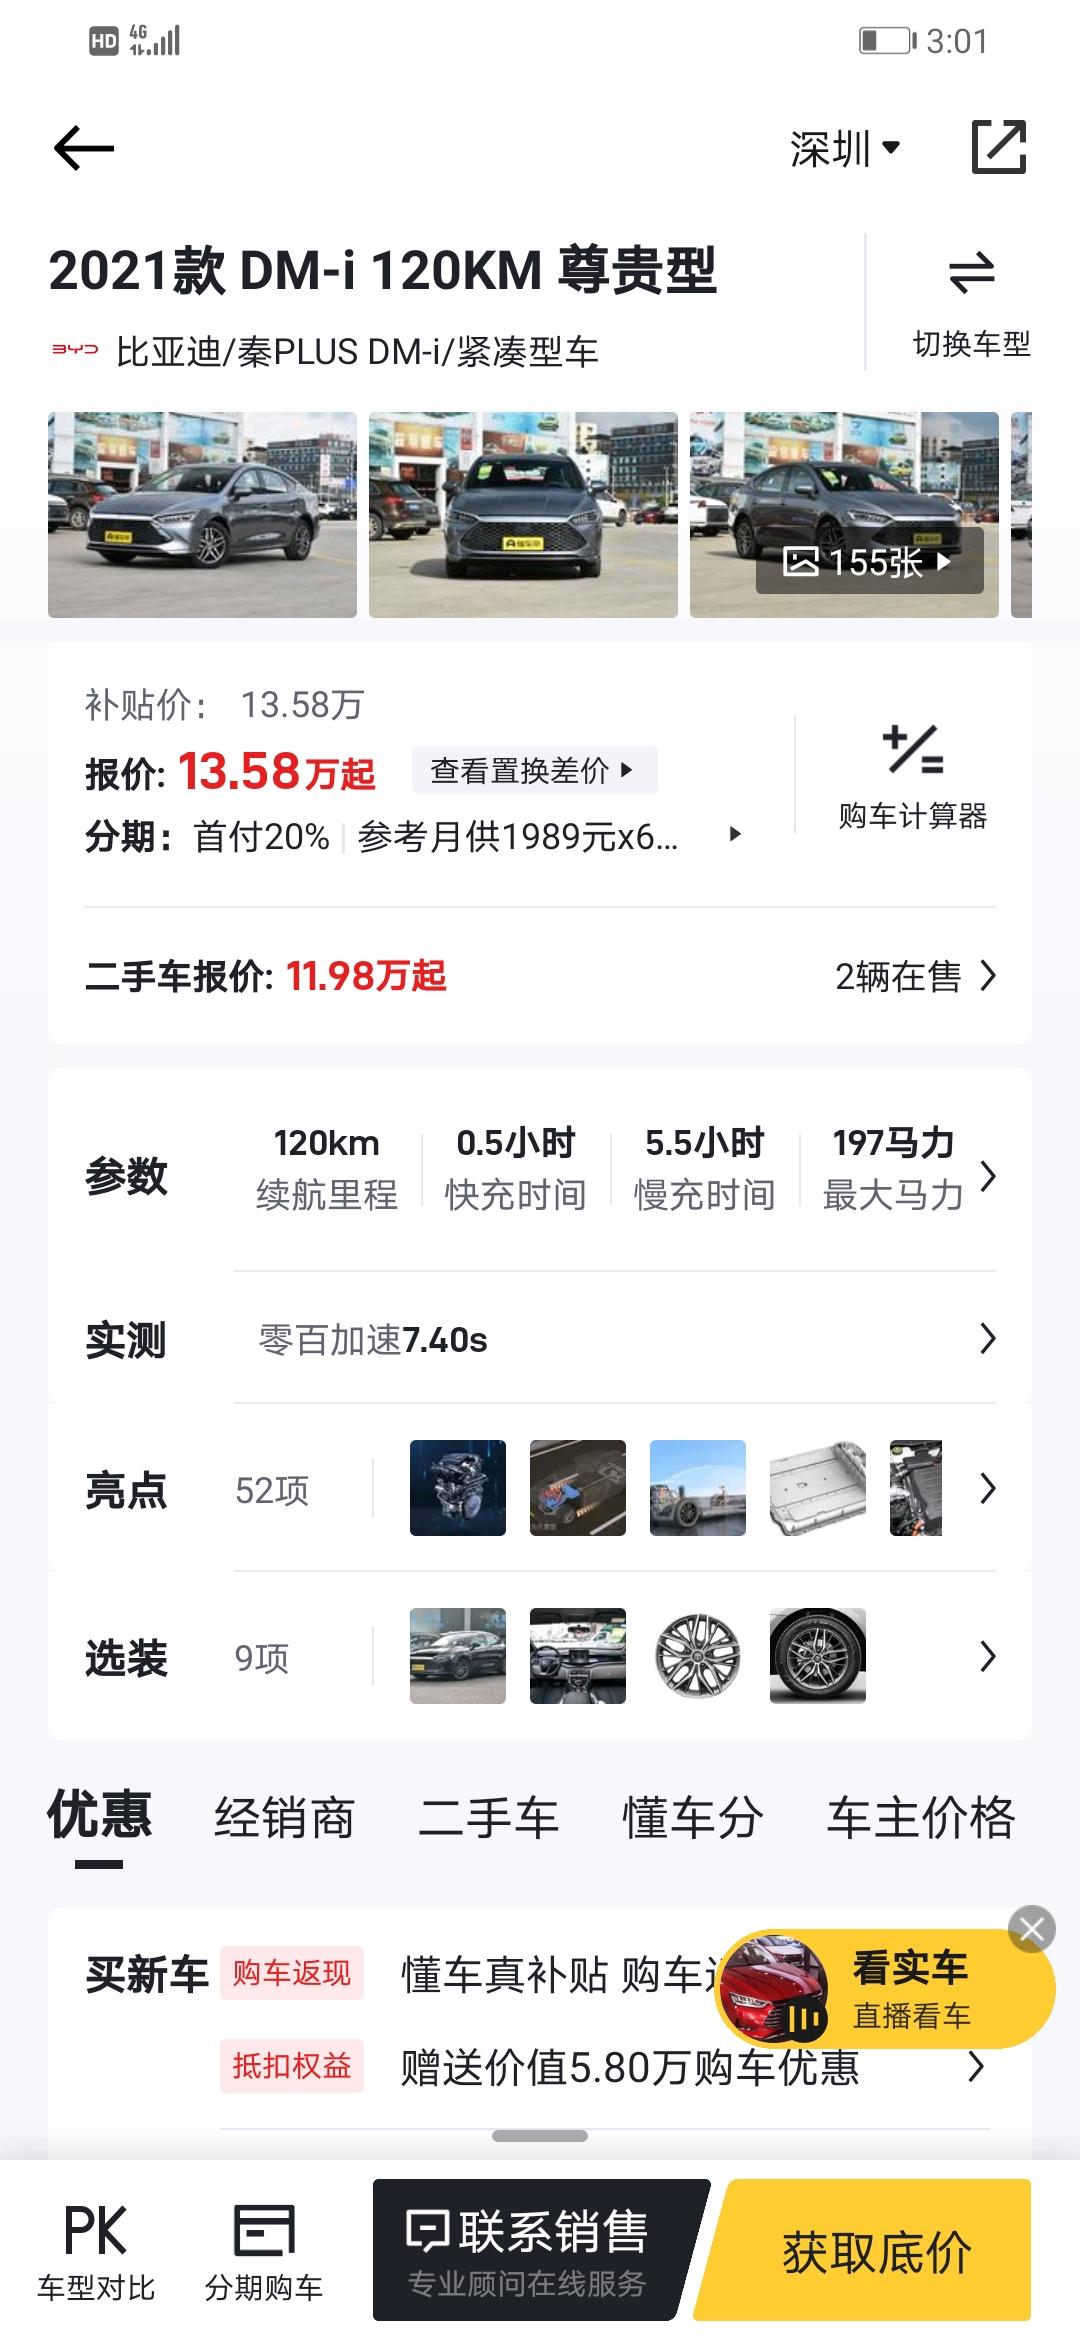 比亚迪秦PLUS DM-i 本人已购入秦plus dmi120尊贵，预计十月下旬提车，由于上的是深圳的专项指标牌照，计划